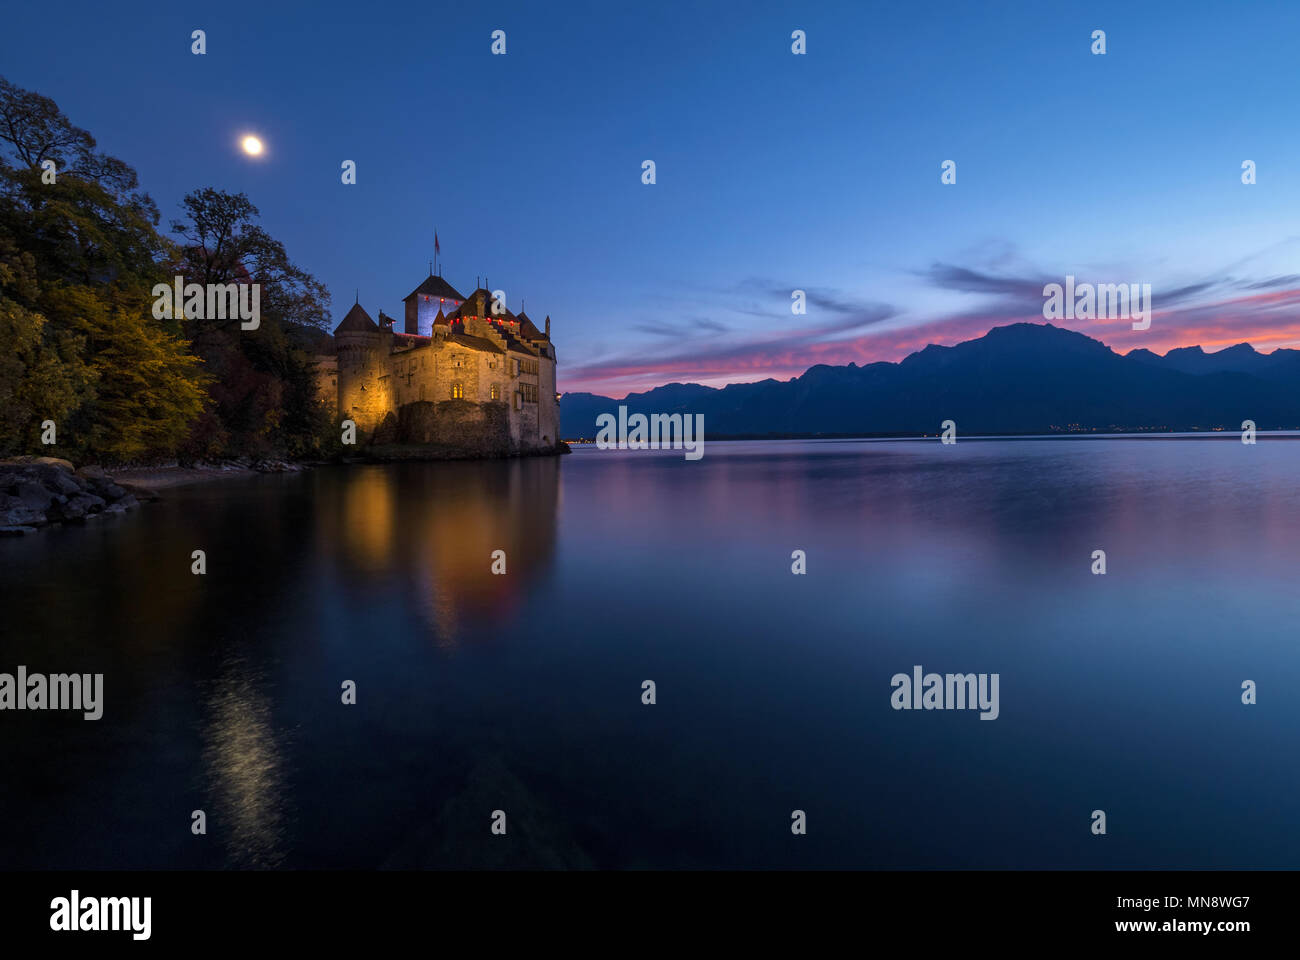 Chillon castle at Night Stock Photo